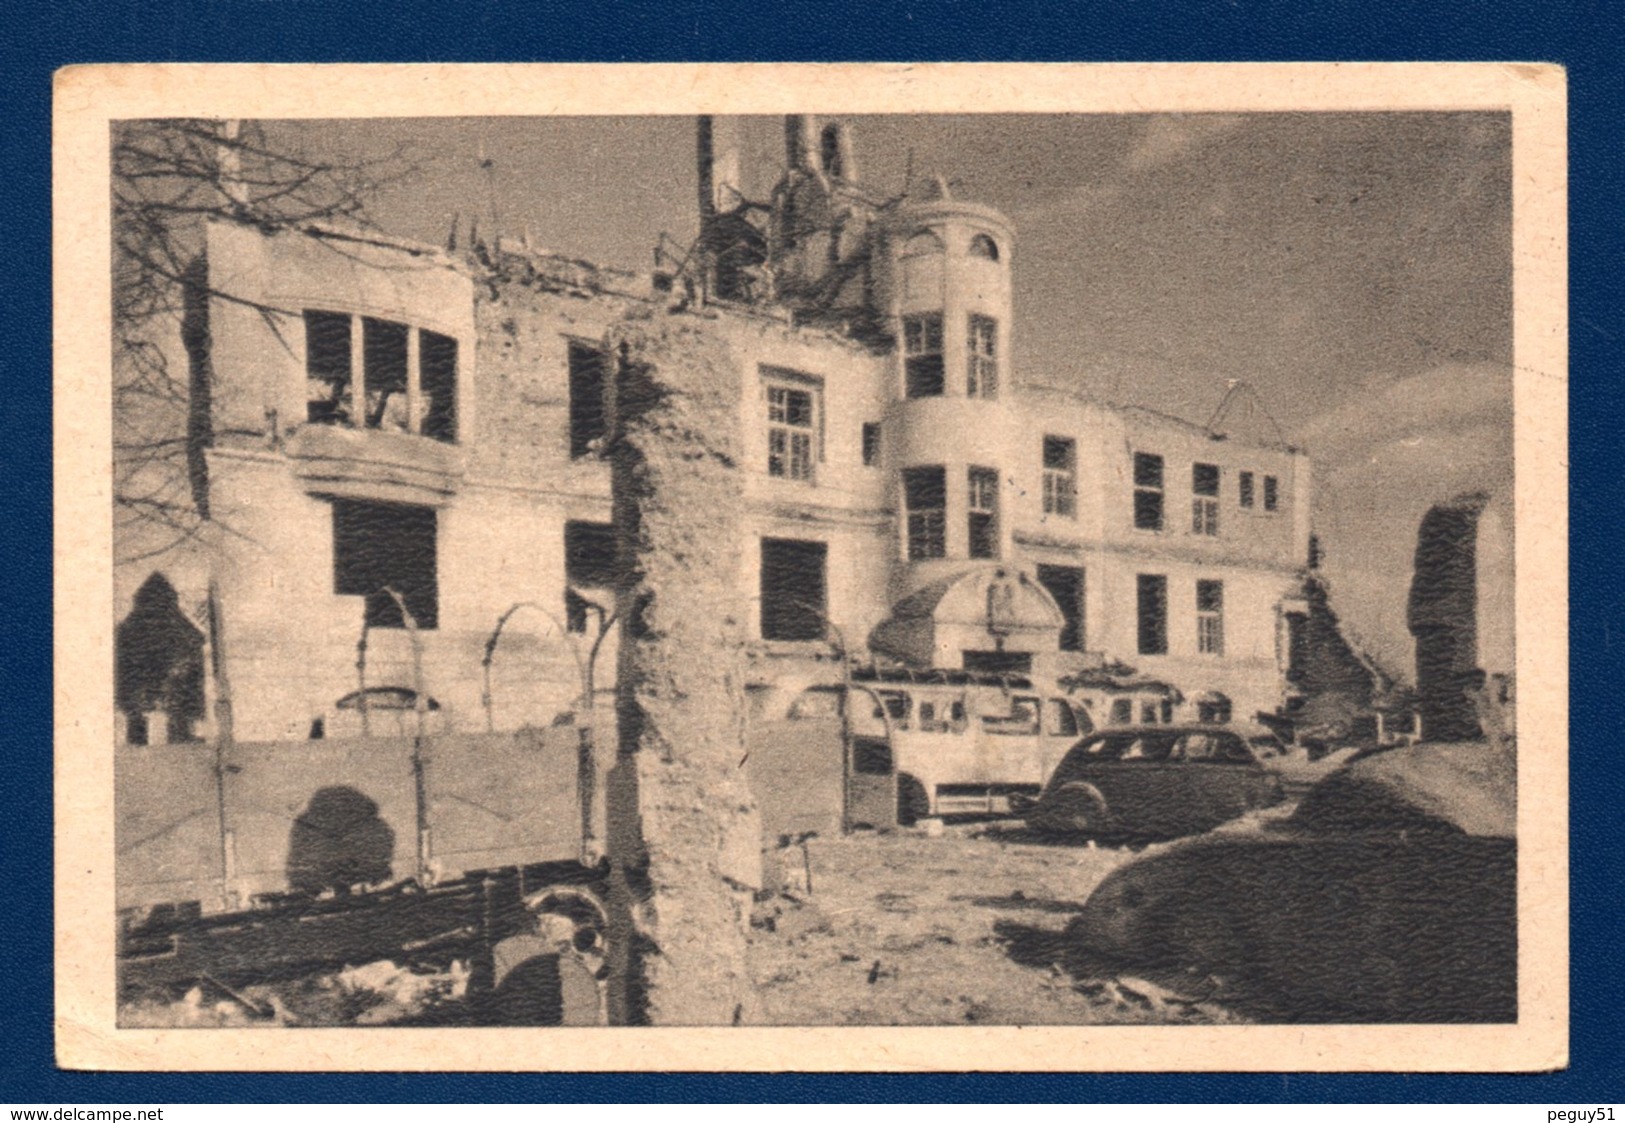 Saint-Vith. Ruines 1939-1945 - Saint-Vith - Sankt Vith